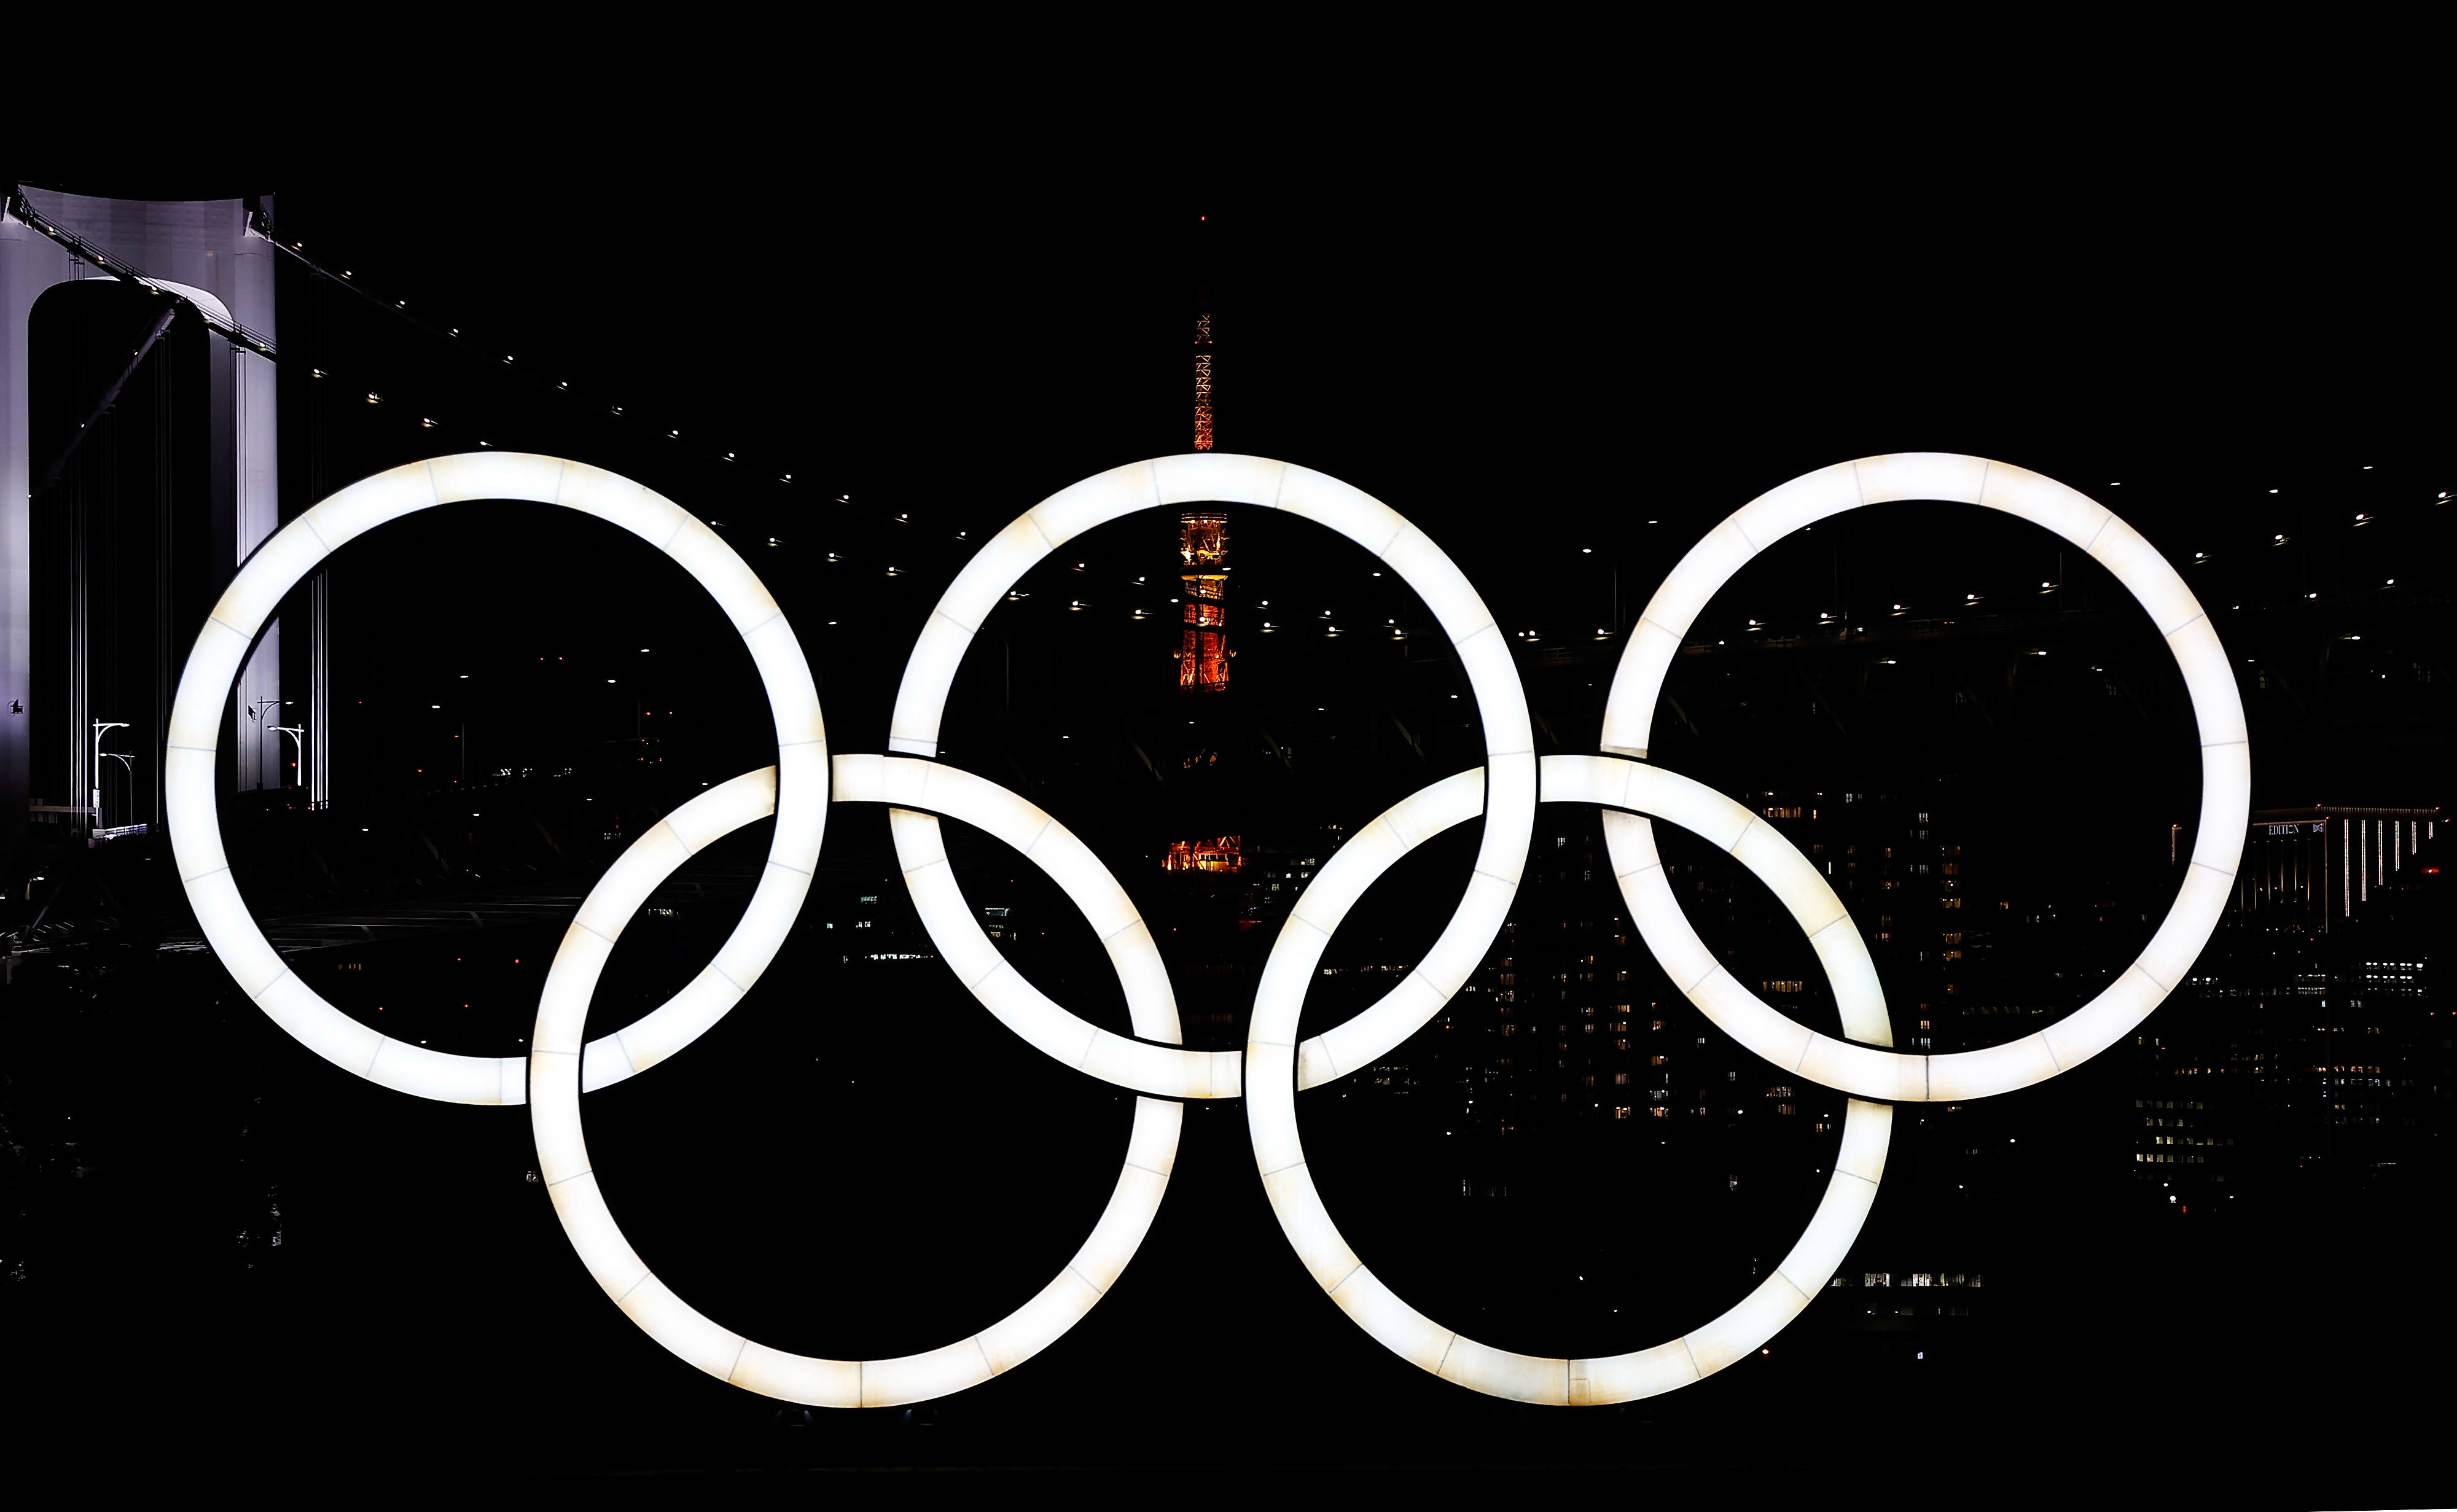 东京奥运会将于7月23日开幕新华社记者王丽莉摄返回搜狐,查看更多